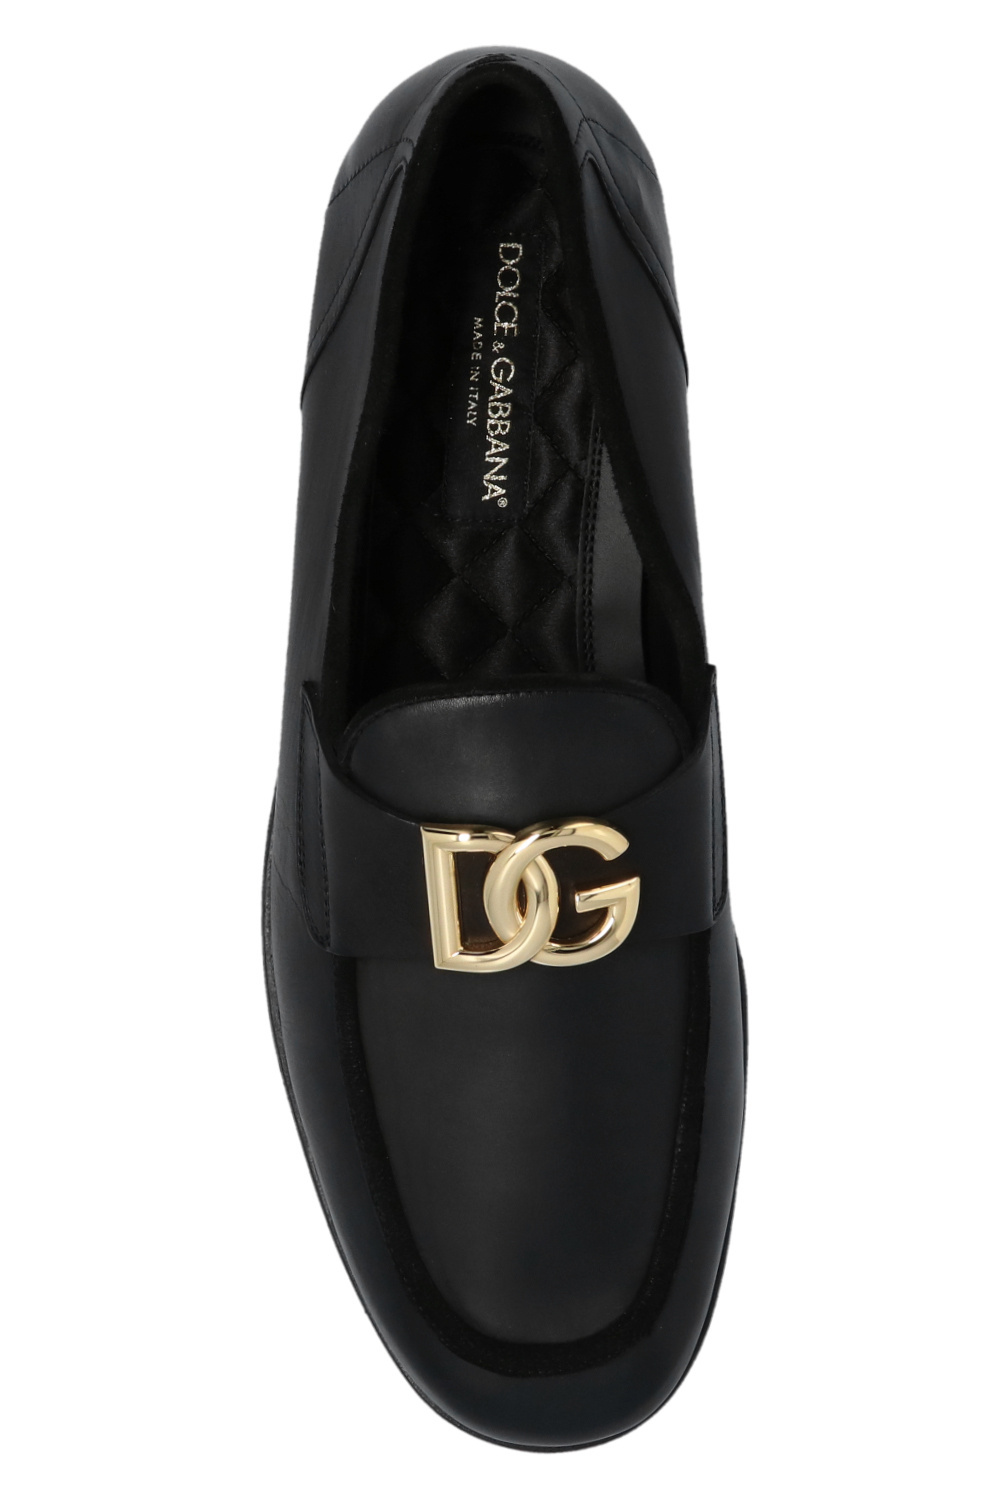 Dolce & Gabbana MEN JEWELERY BRACELETS Leather loafers